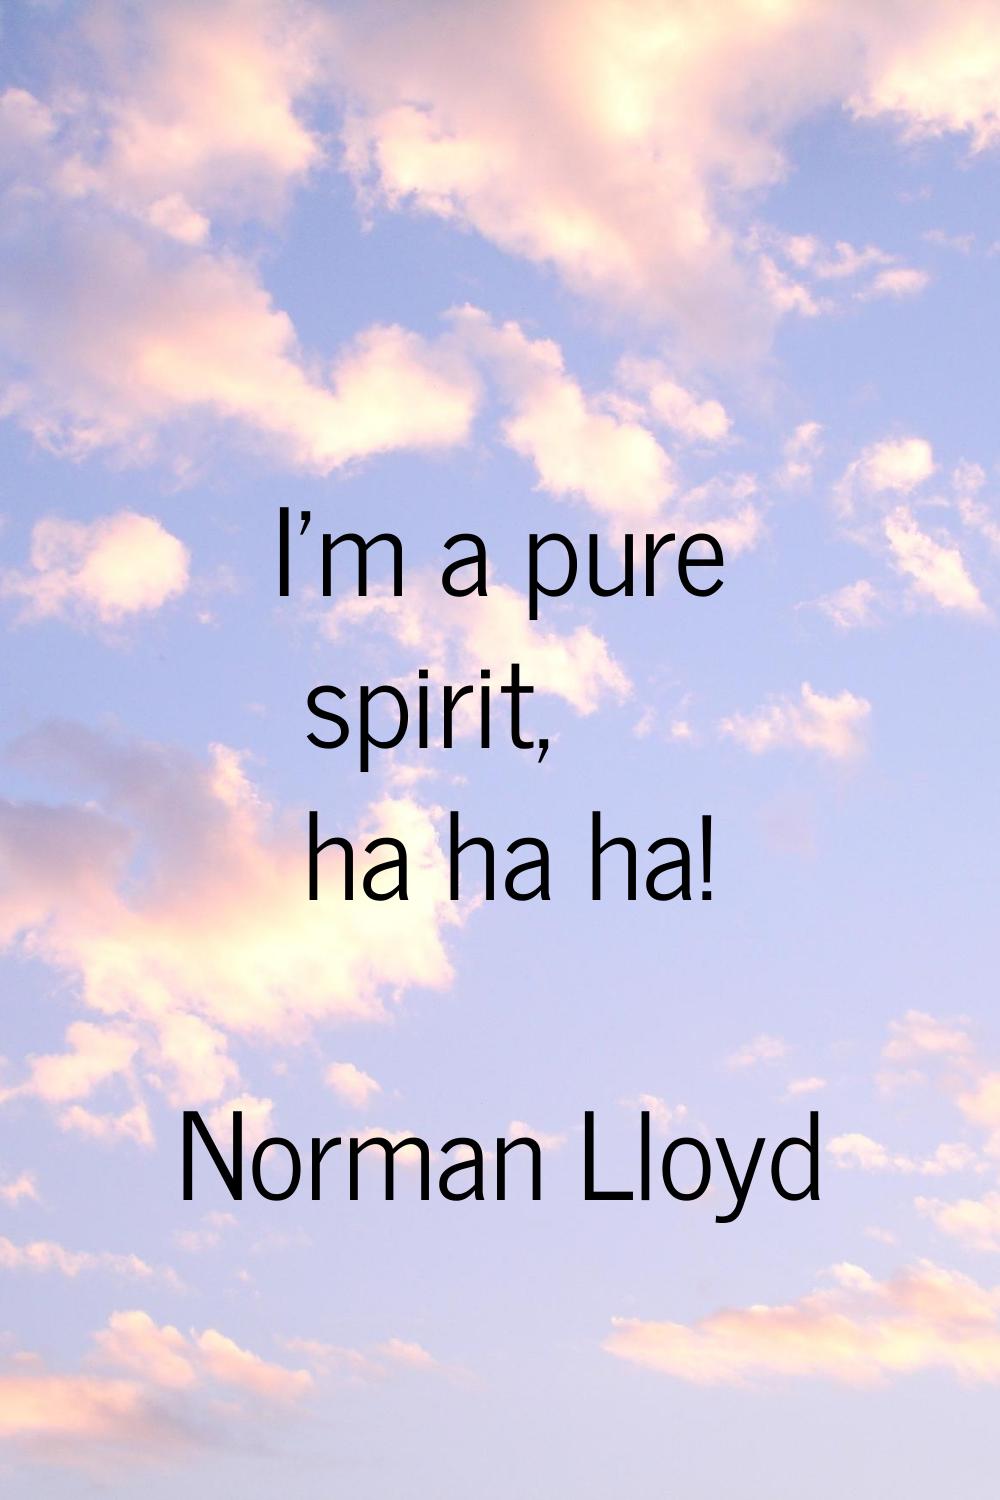 I'm a pure spirit, ha ha ha!